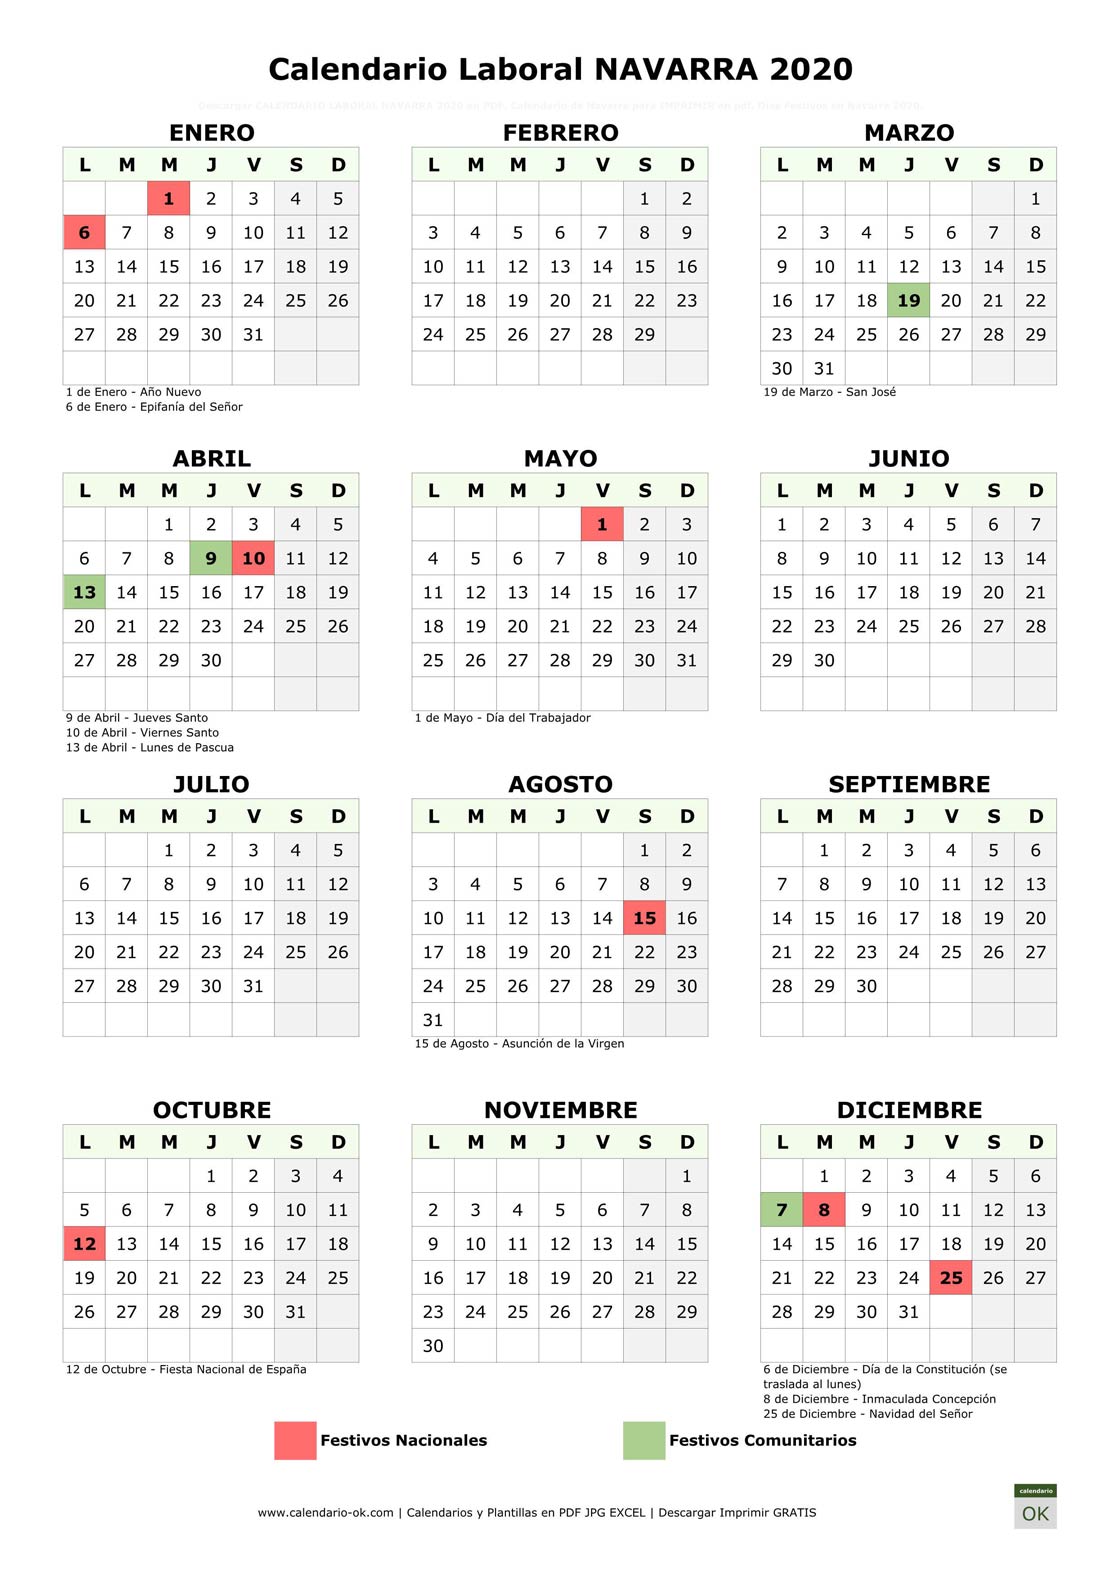 Calendario Laboral COMUNIDAD FORAL DE NAVARRA 2020